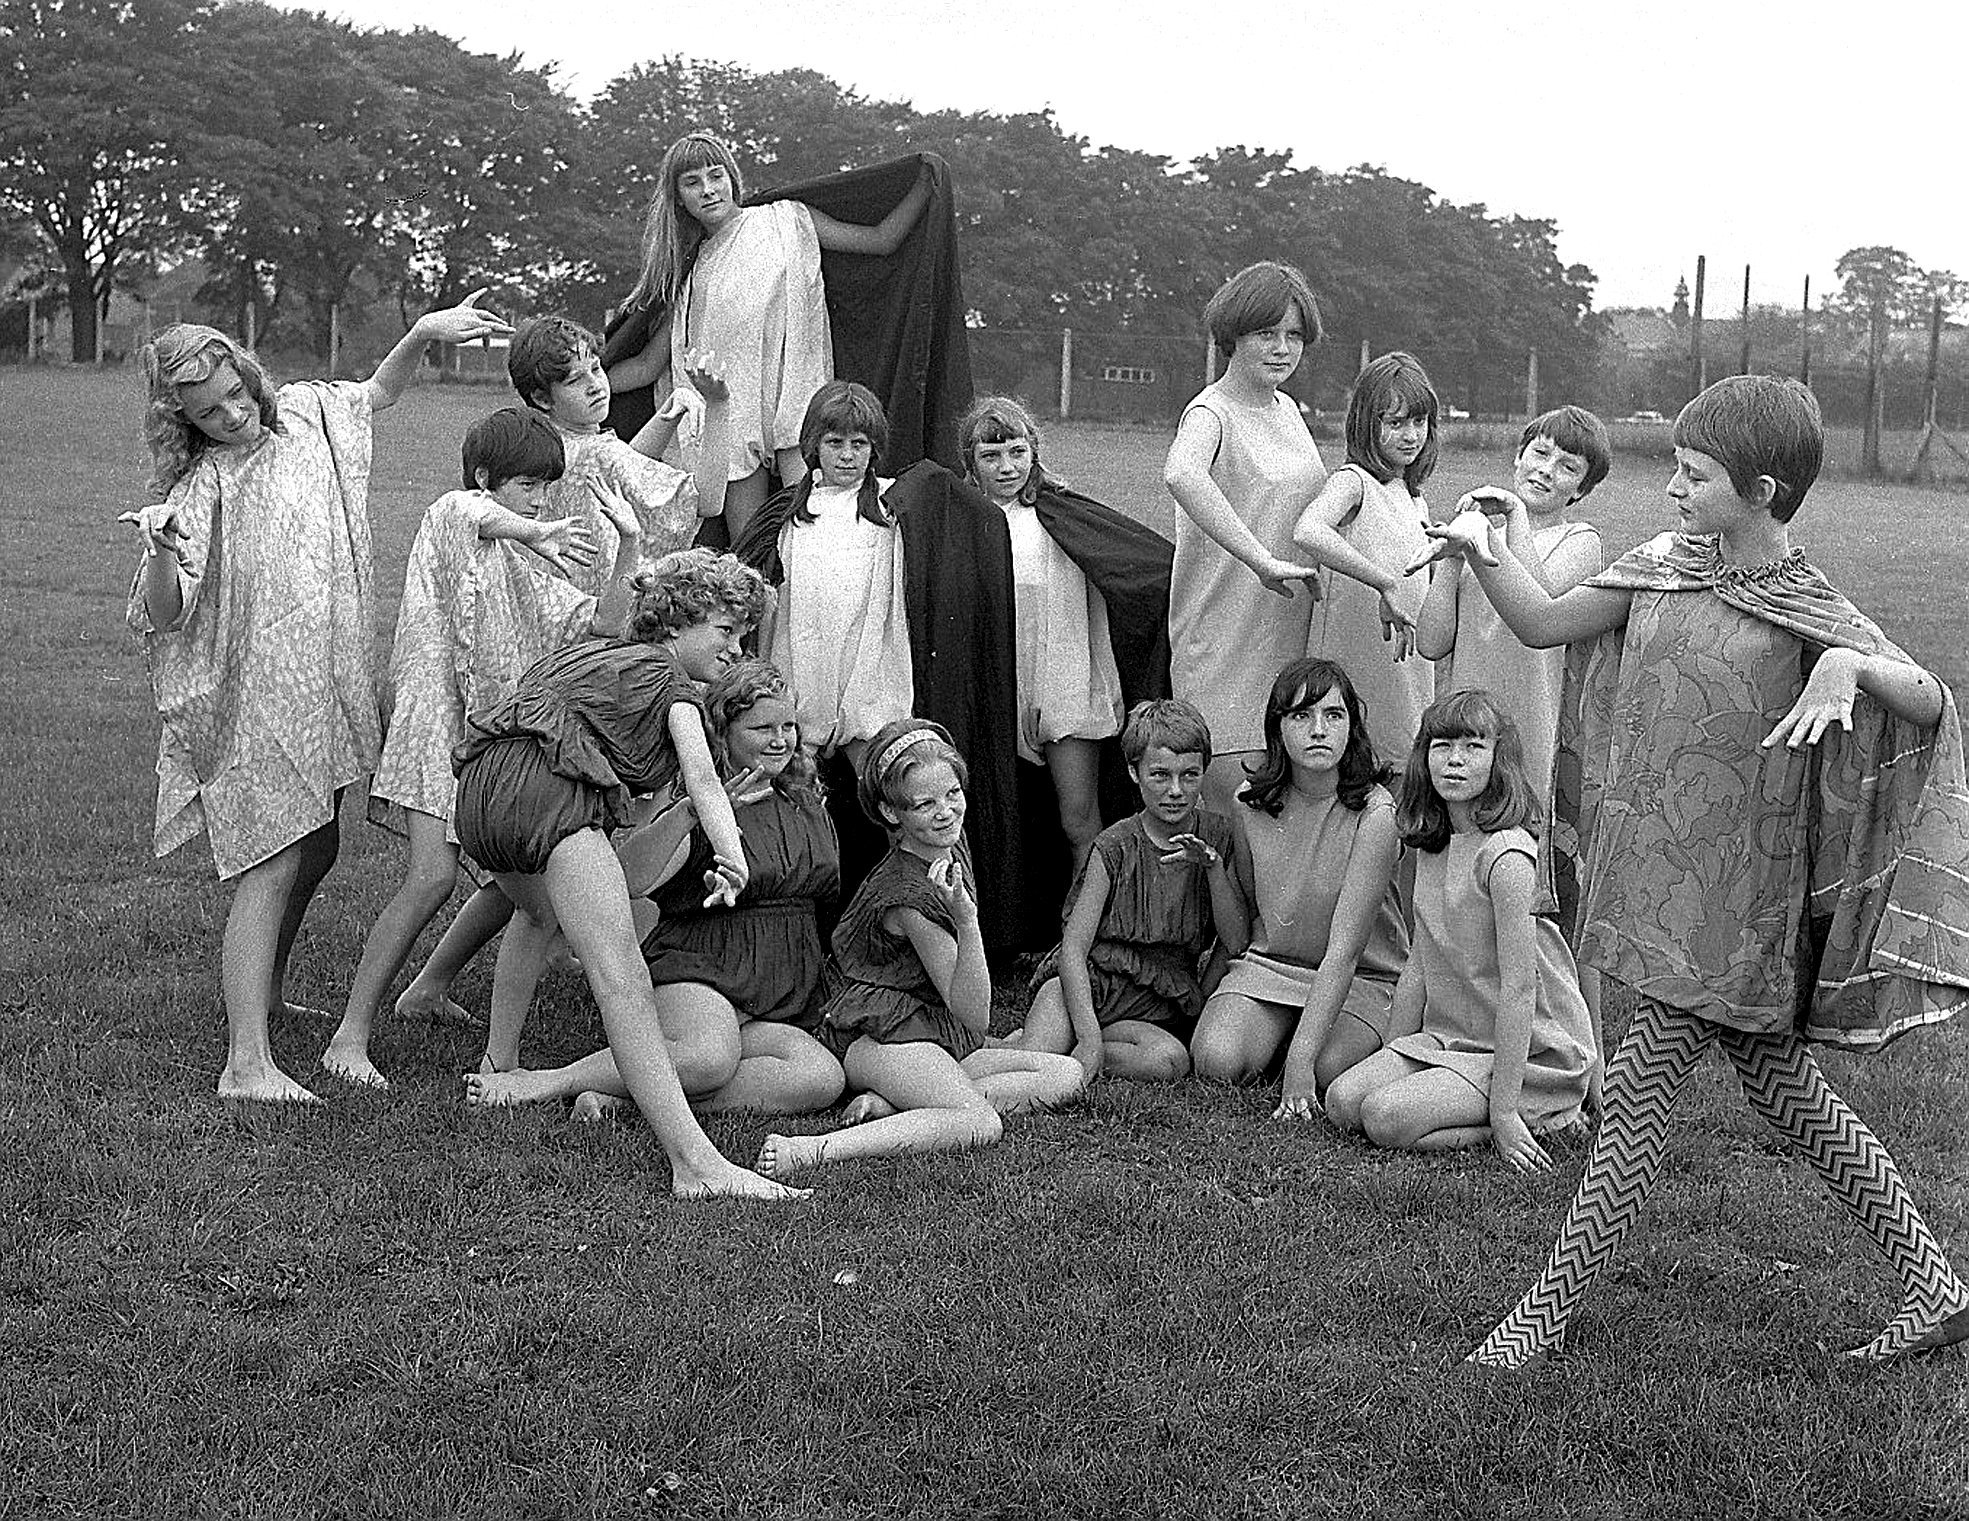 Alexander School dancers, Wrexham, 1967.